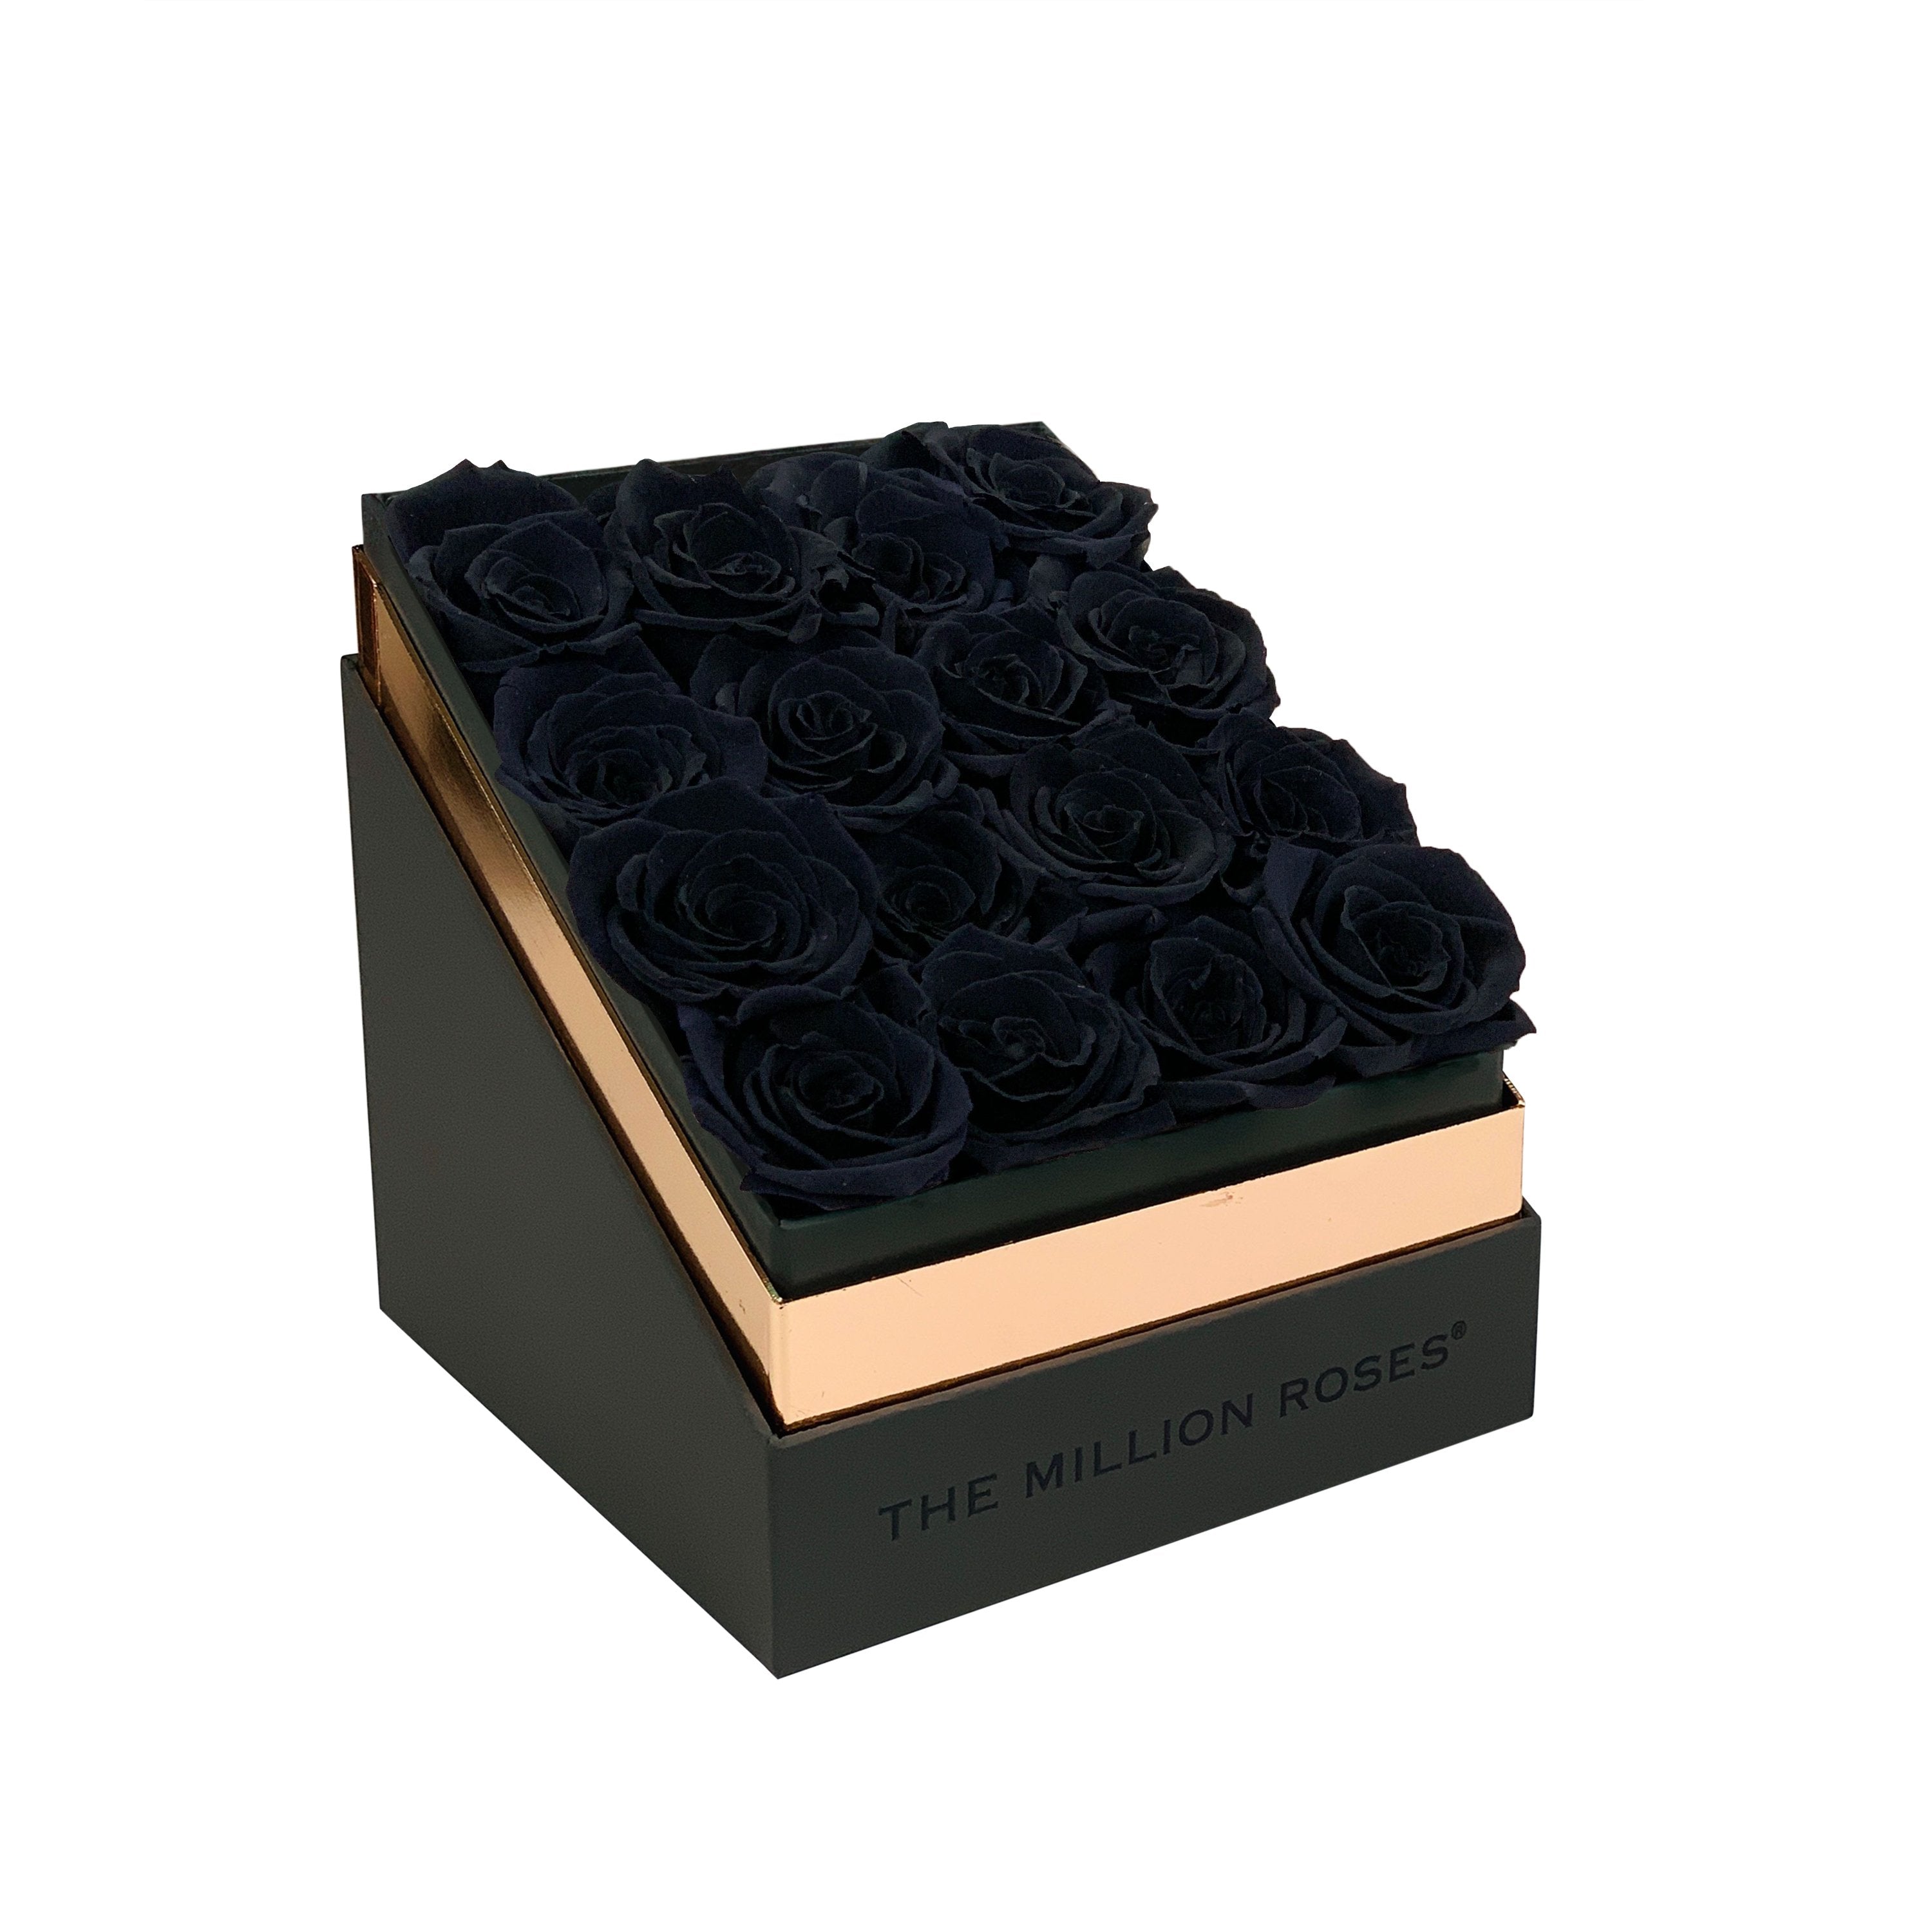 The Square - Gray Box - Black Roses